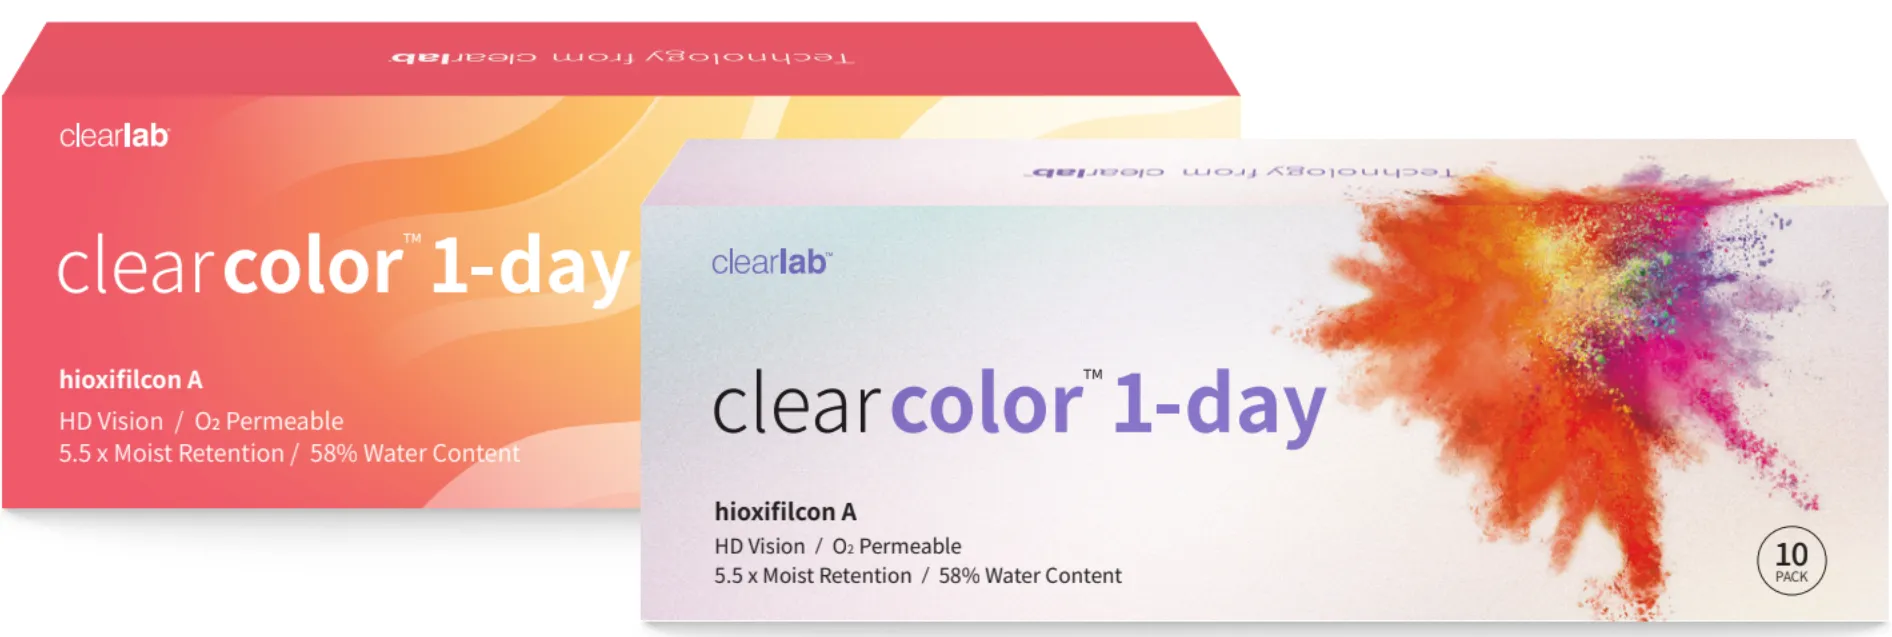 ClearLab ClearColor 1-Day kolorowe soczewki kontaktowe jasnoniebieskie, -3,75, 10 szt.